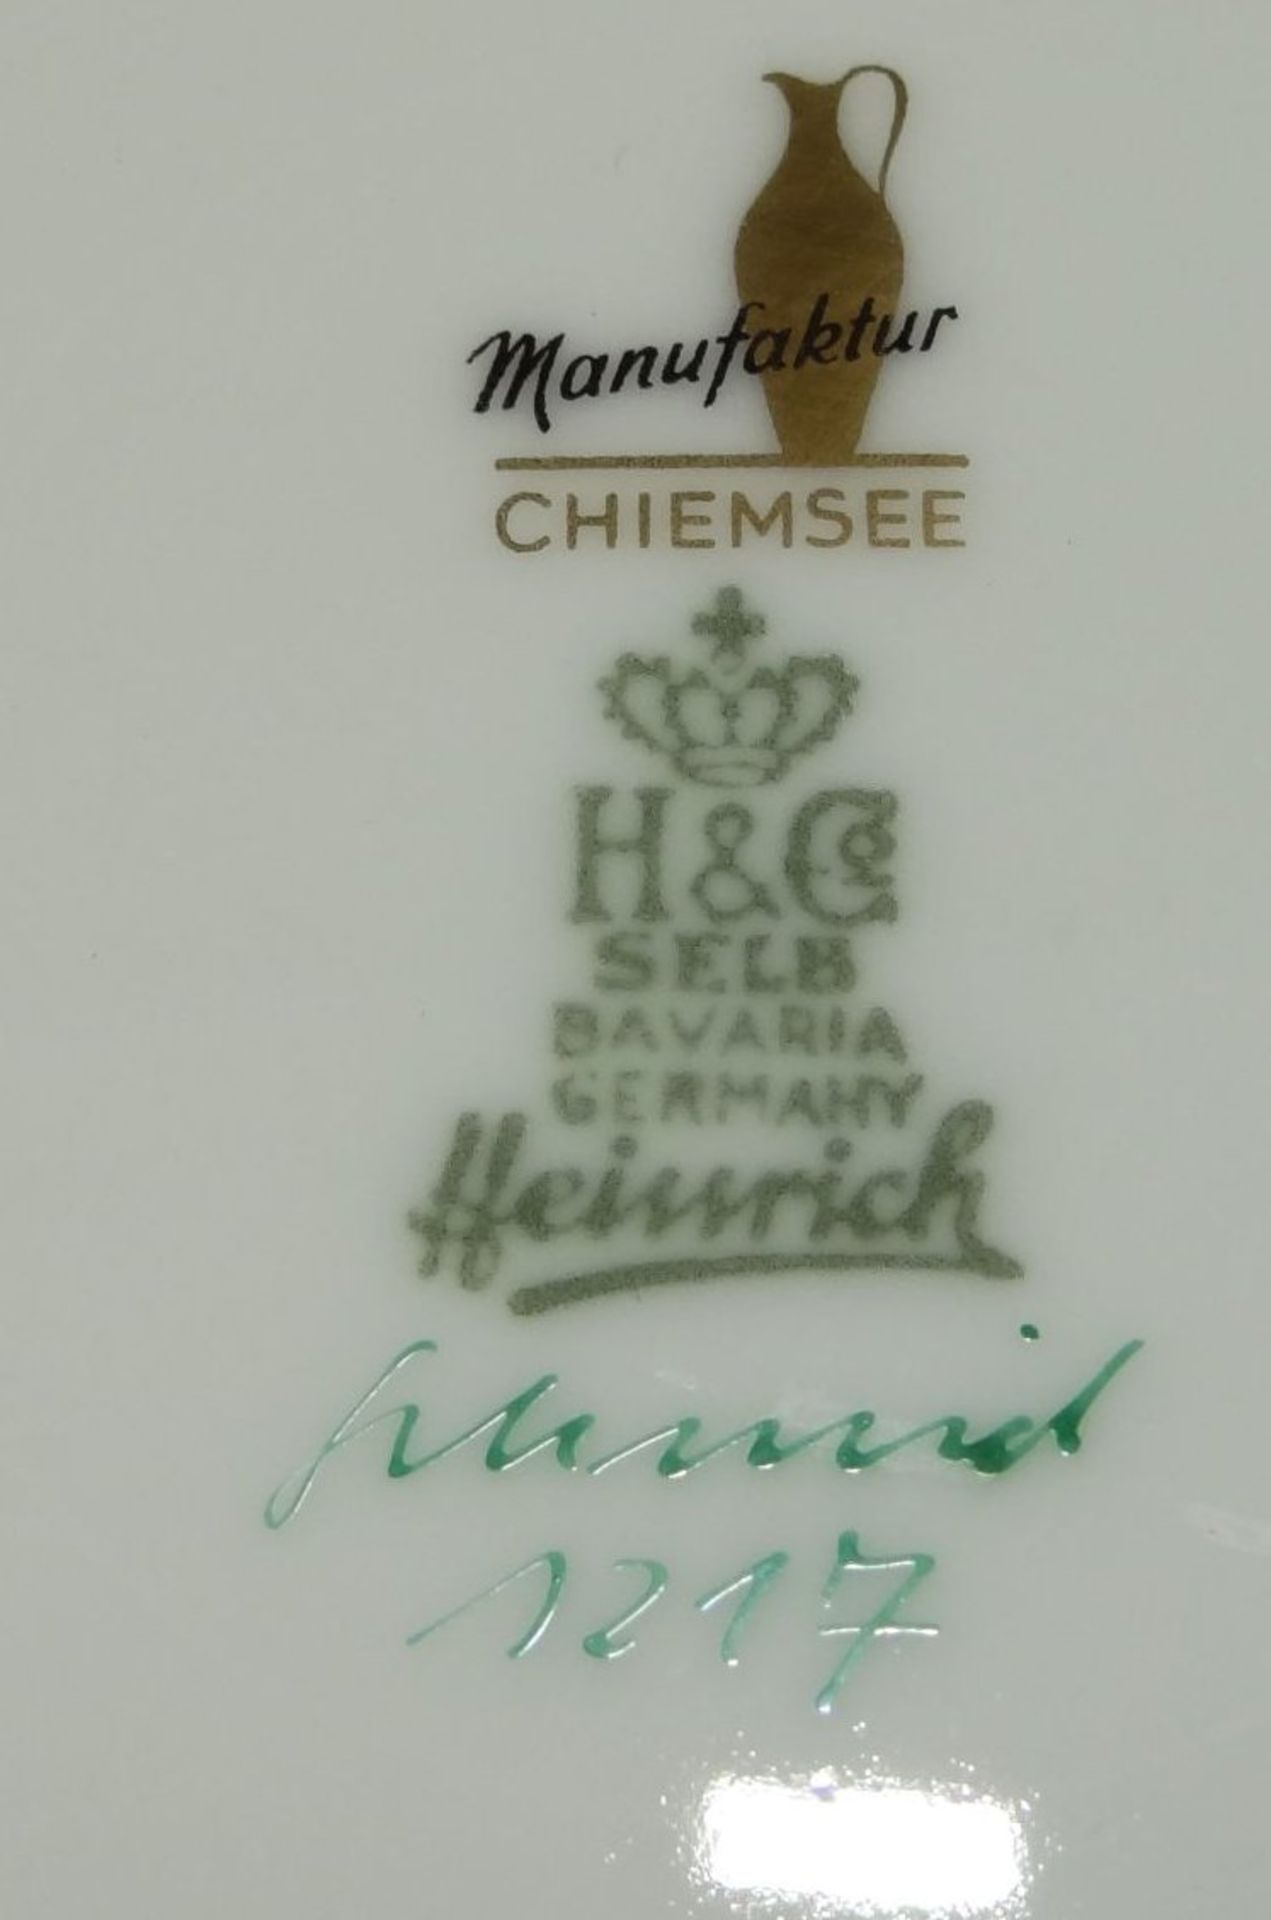 gr. Schale auf Standring, handgemalt, signiert "Schmid", Heinrich Porzellan, Manufaktur Chiemsee, - Bild 4 aus 4